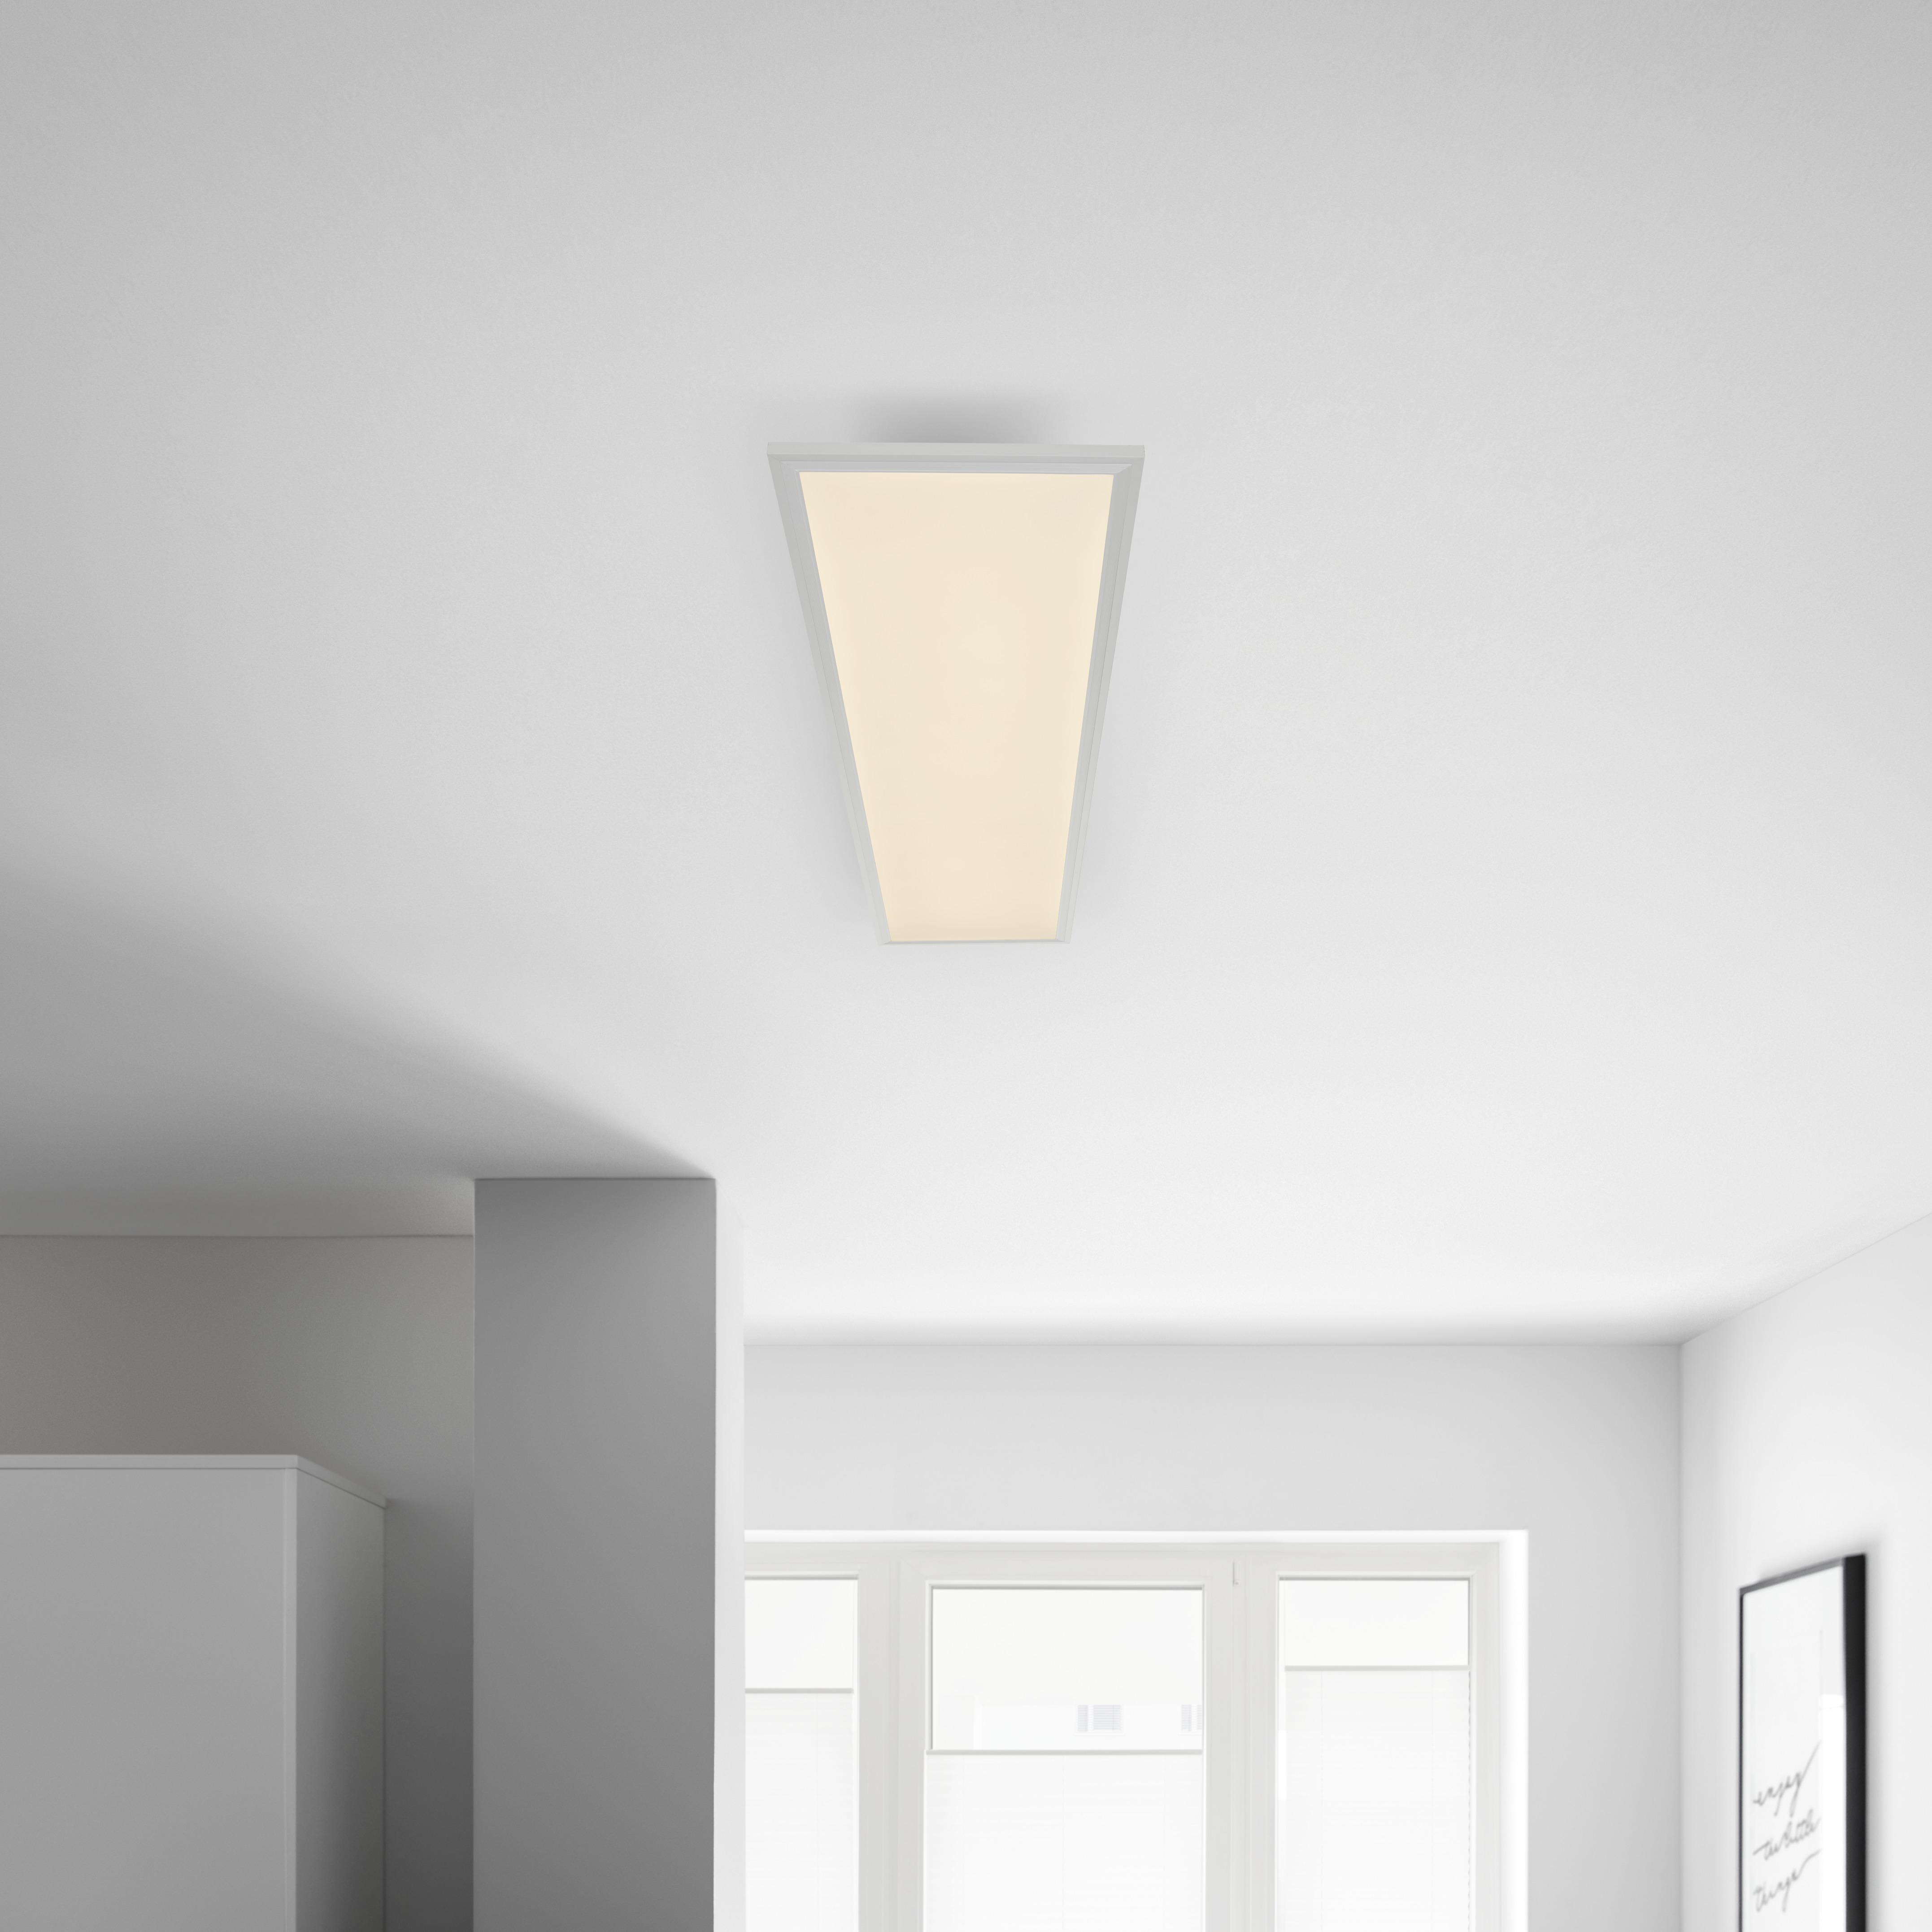 LED-Deckenleuchte Cornelius max. 40 Watt - Weiss, Modern, Kunststoff (120/30/7,5cm) - Premium Living